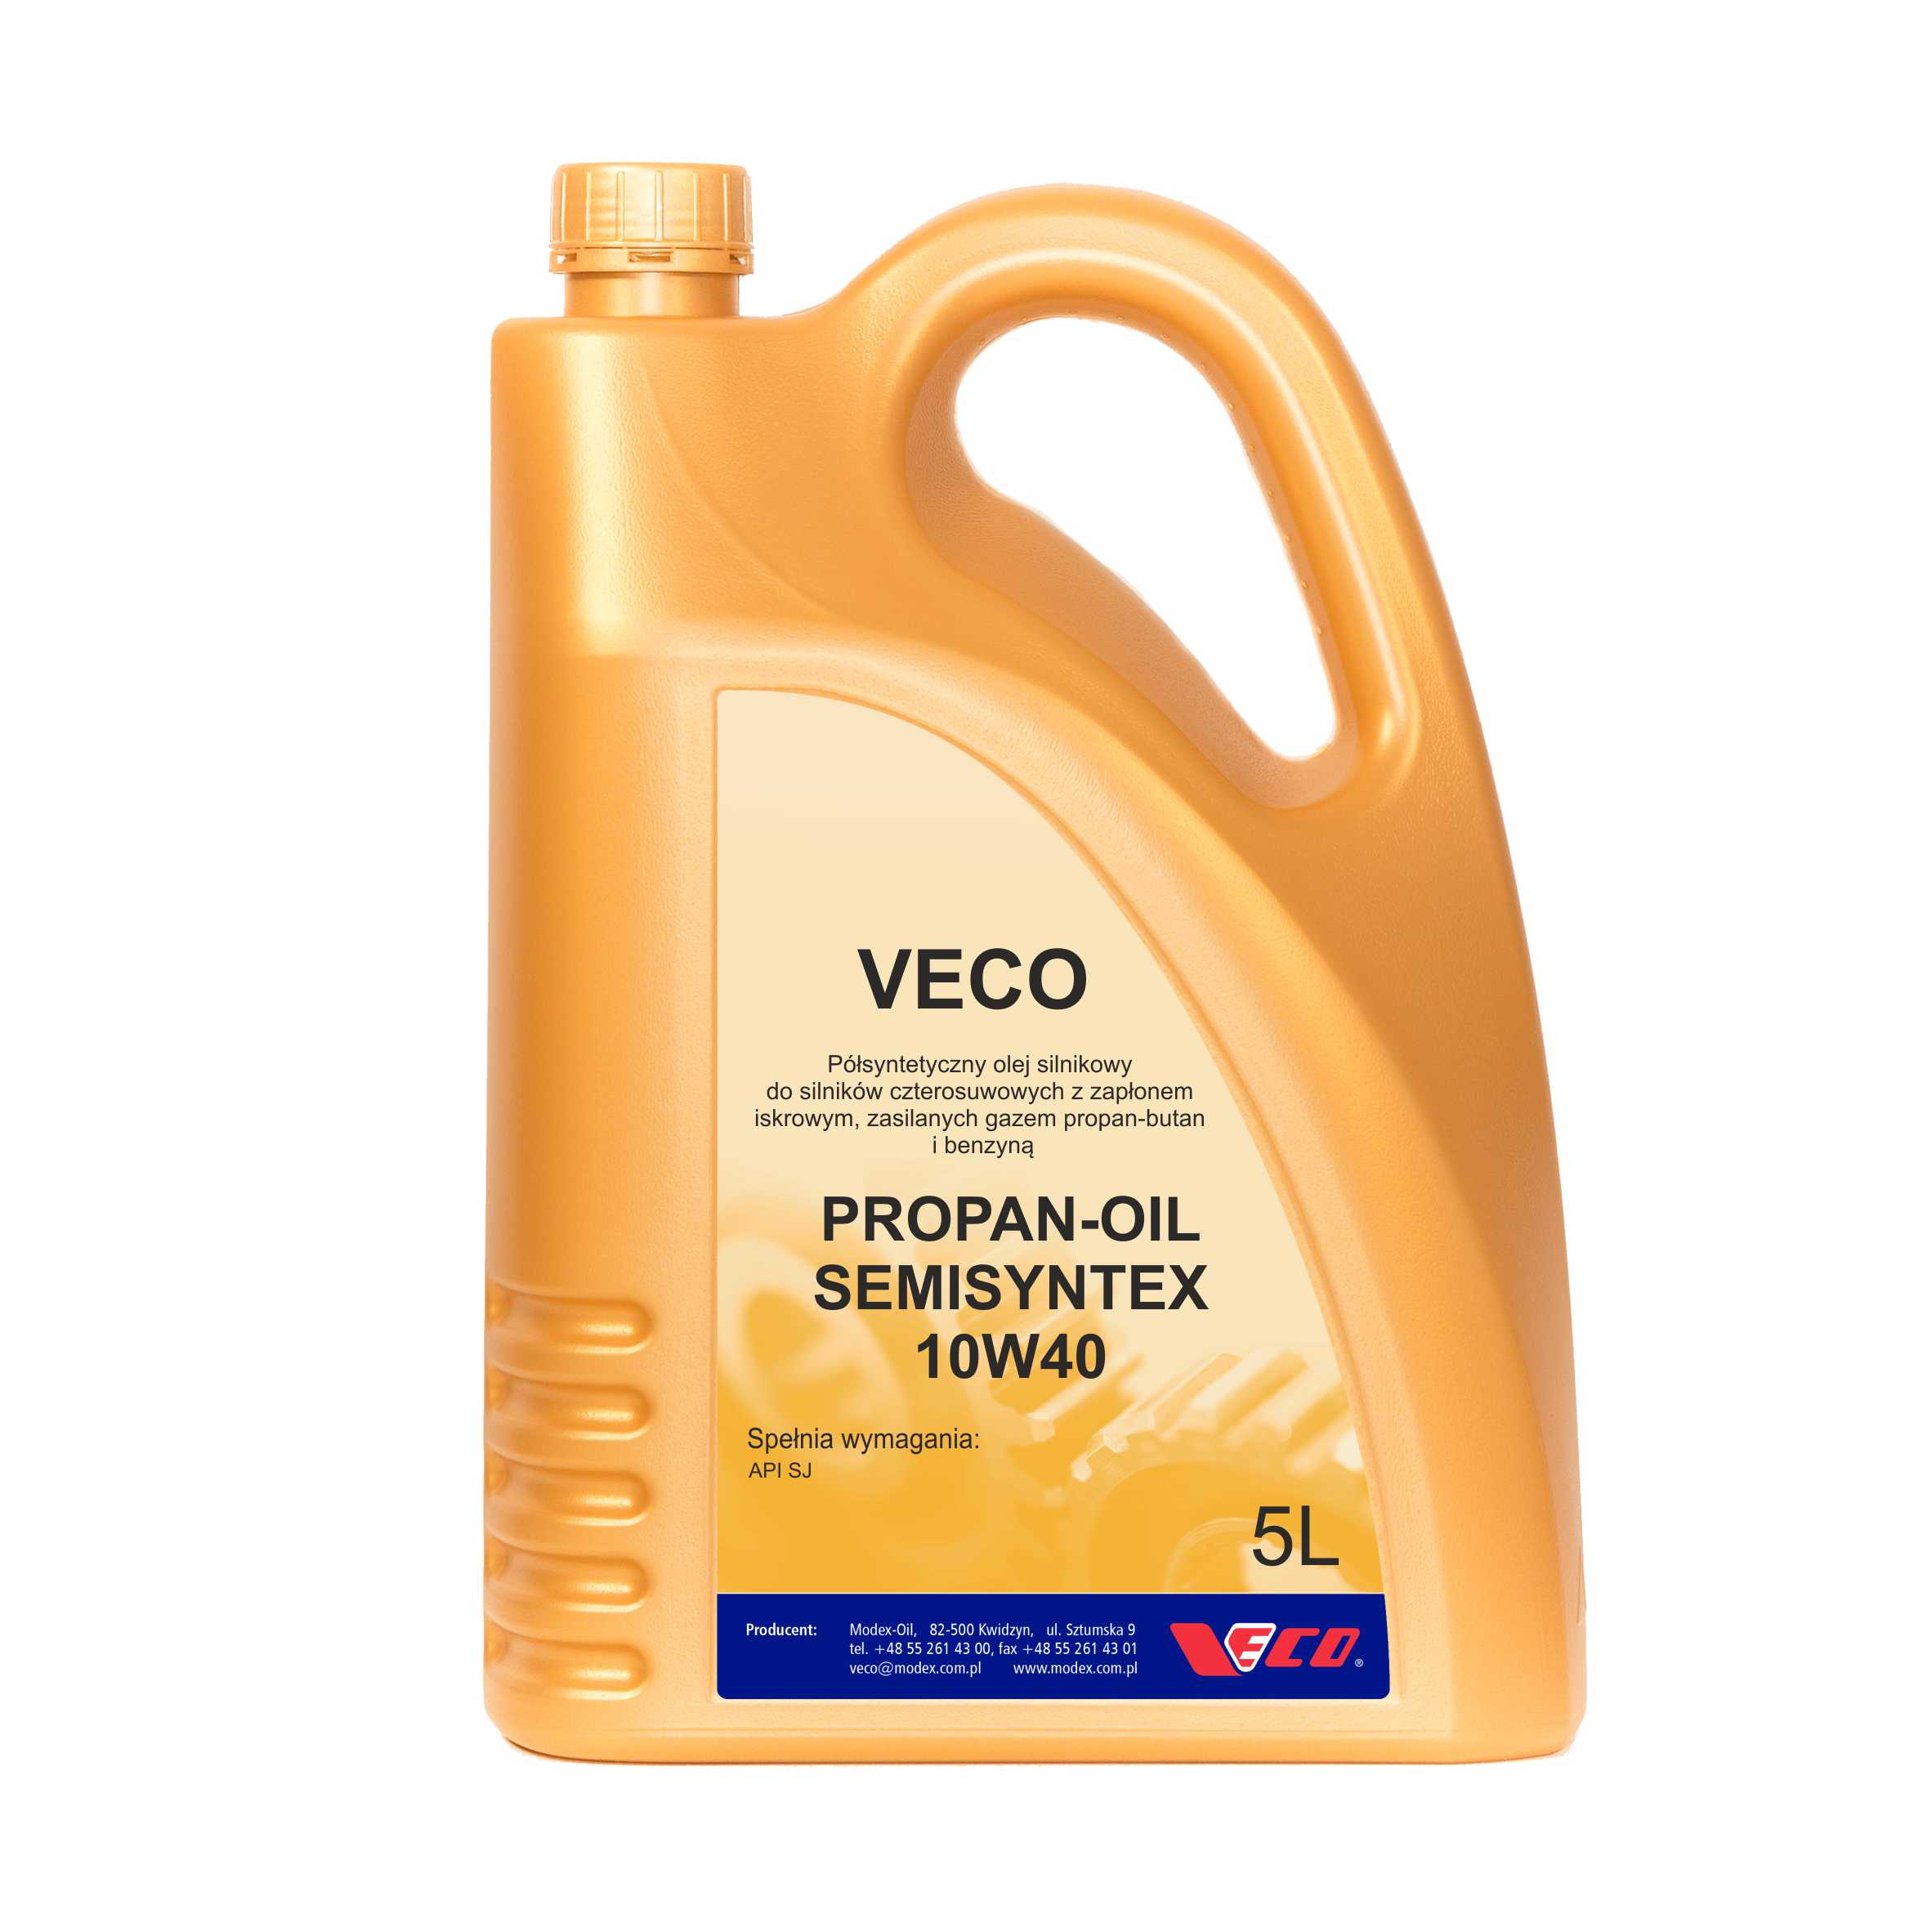 VECO PROPAN-OIL SEMISYNTEX 10W40 5L class=